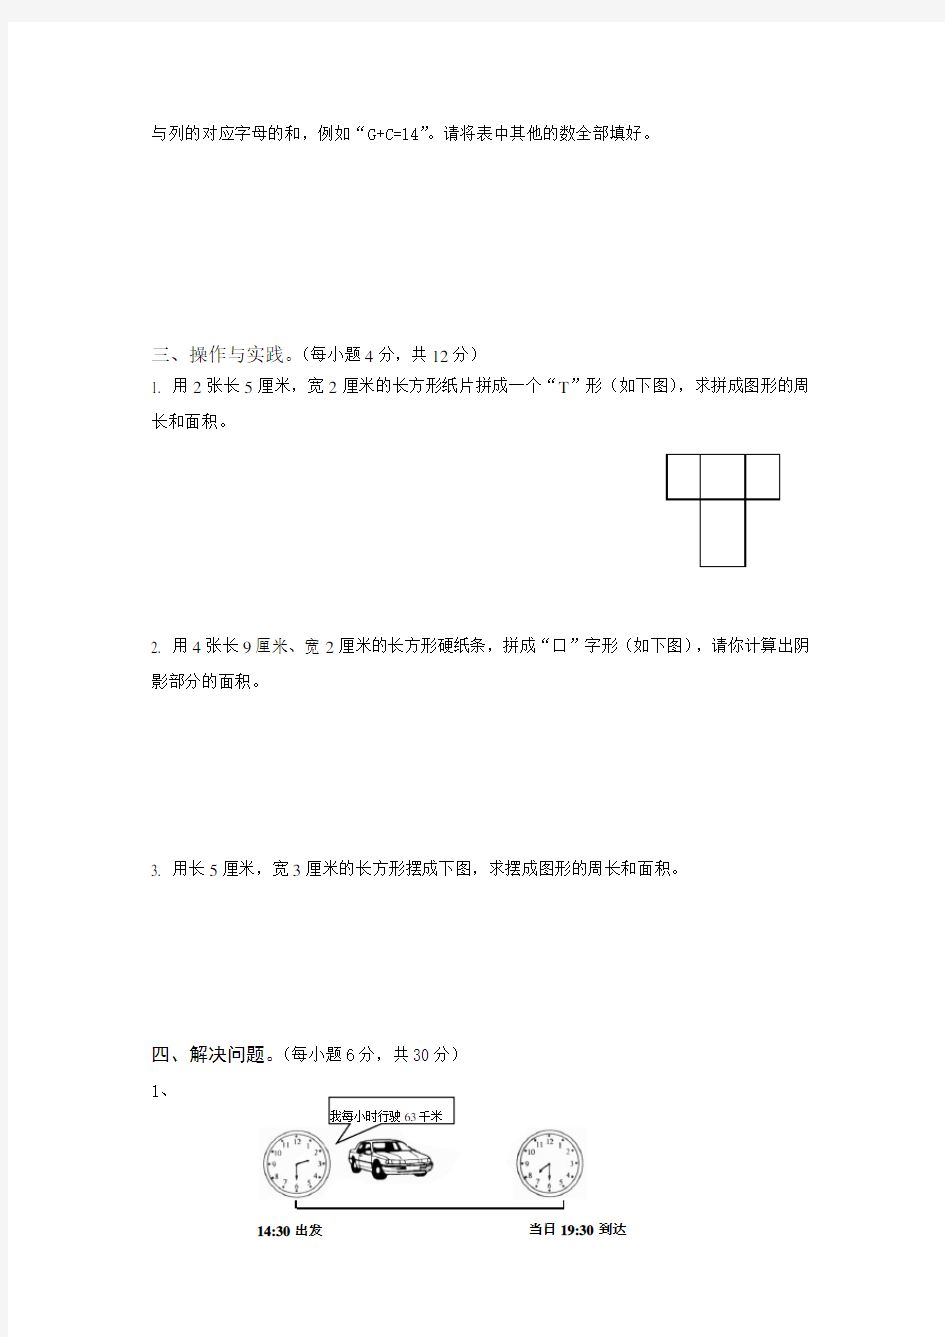 世界少年奥林匹克数学竞赛(中国区)总决赛三年级试卷